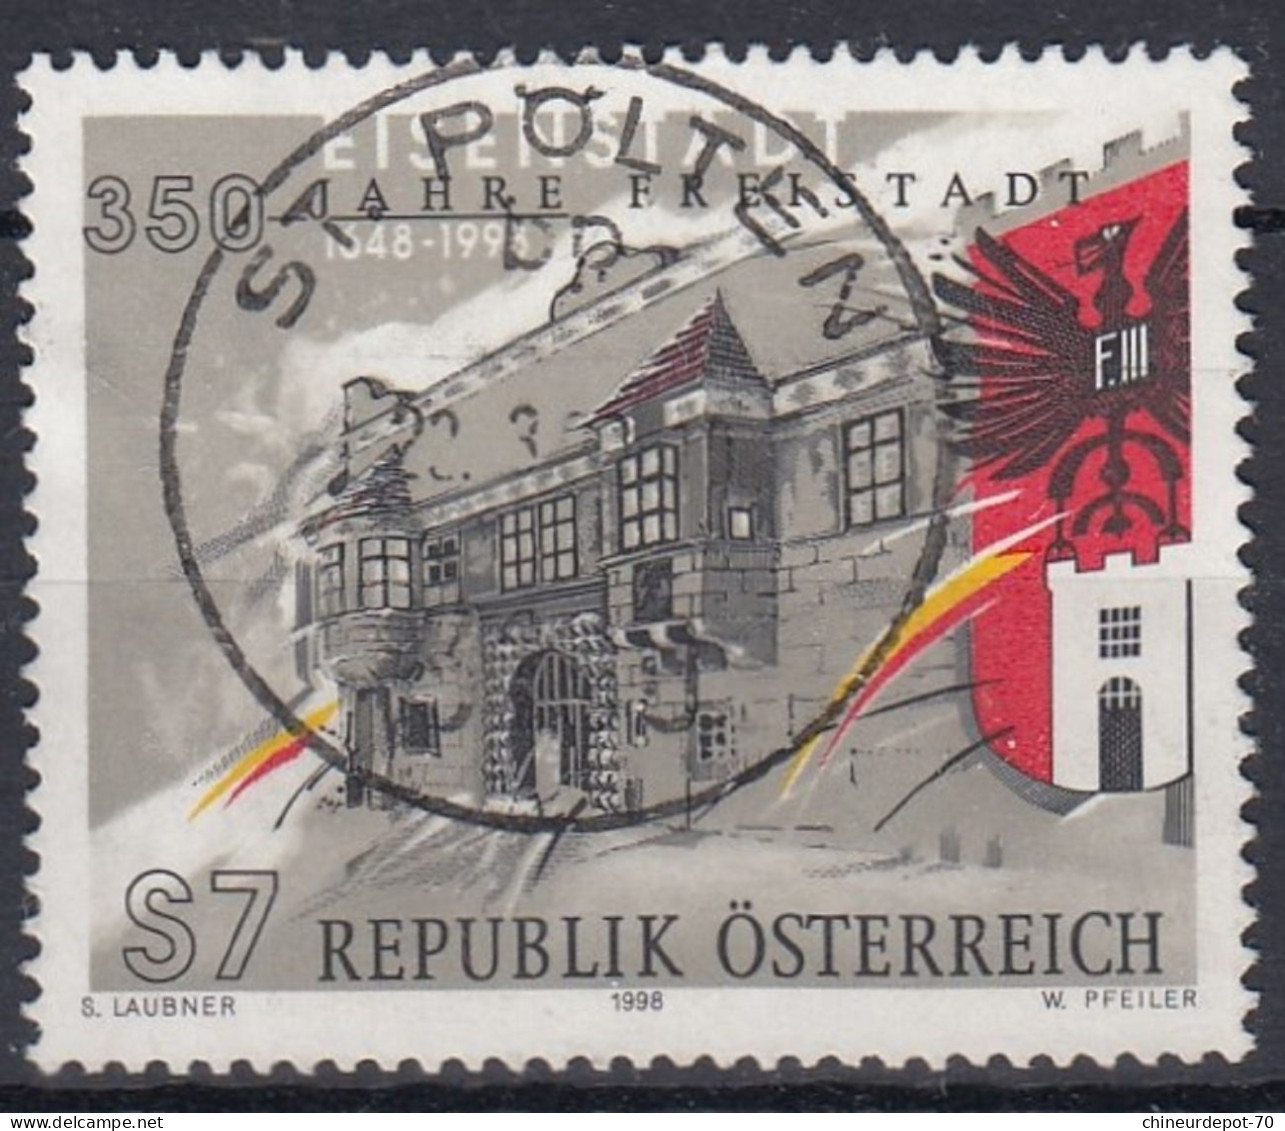 S7 REPUBLIK ÖSTERREICH S LAUBNER 1998 W PFEILER Cachet Sankt Polten - Oblitérés